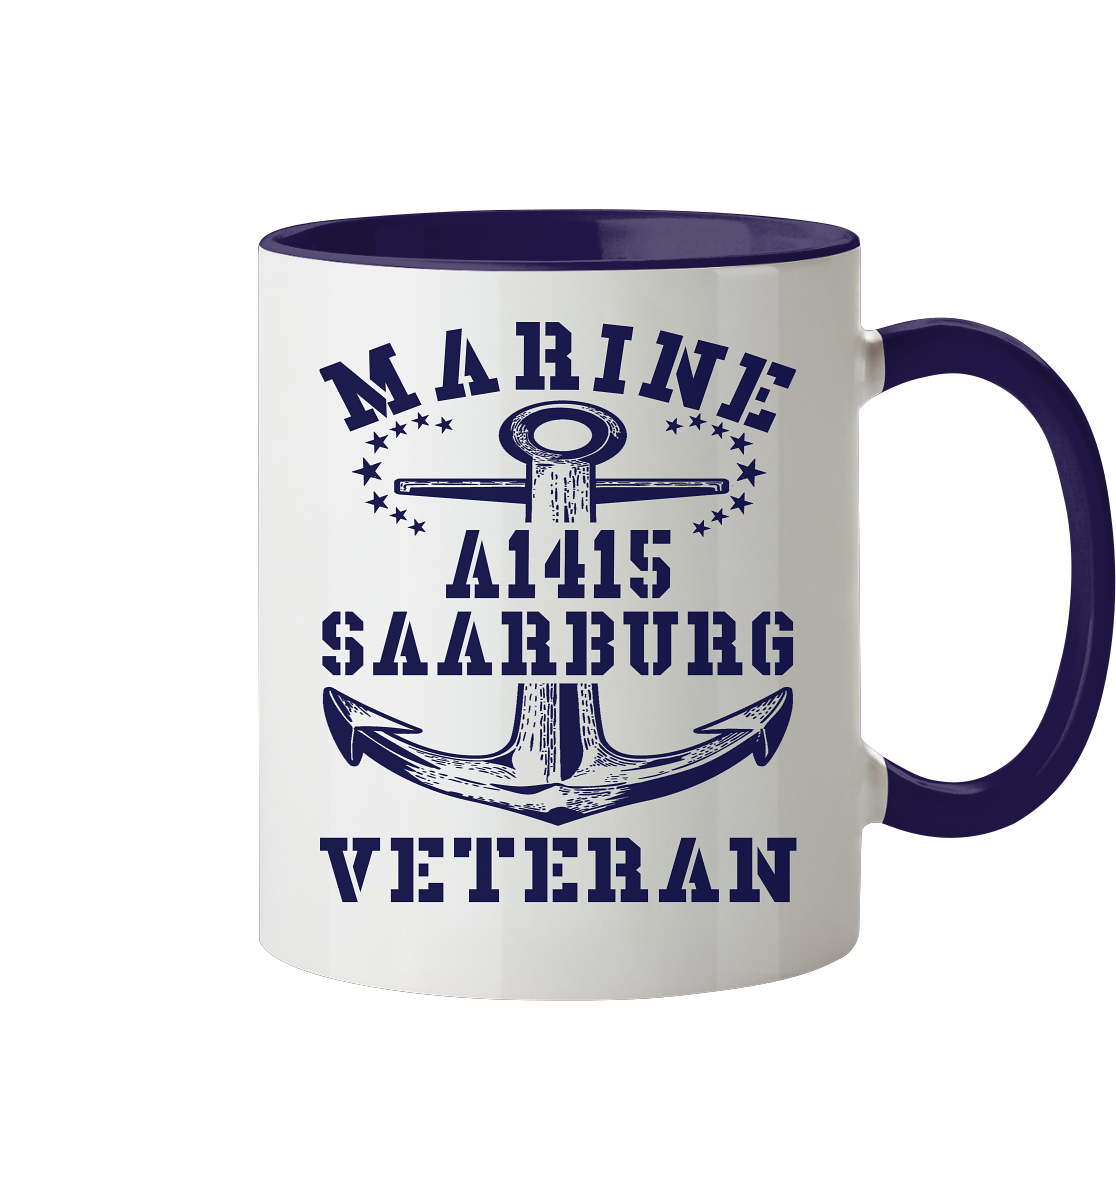 Troßschiff A1415 SAARBURG Marine Veteran - Tasse zweifarbig